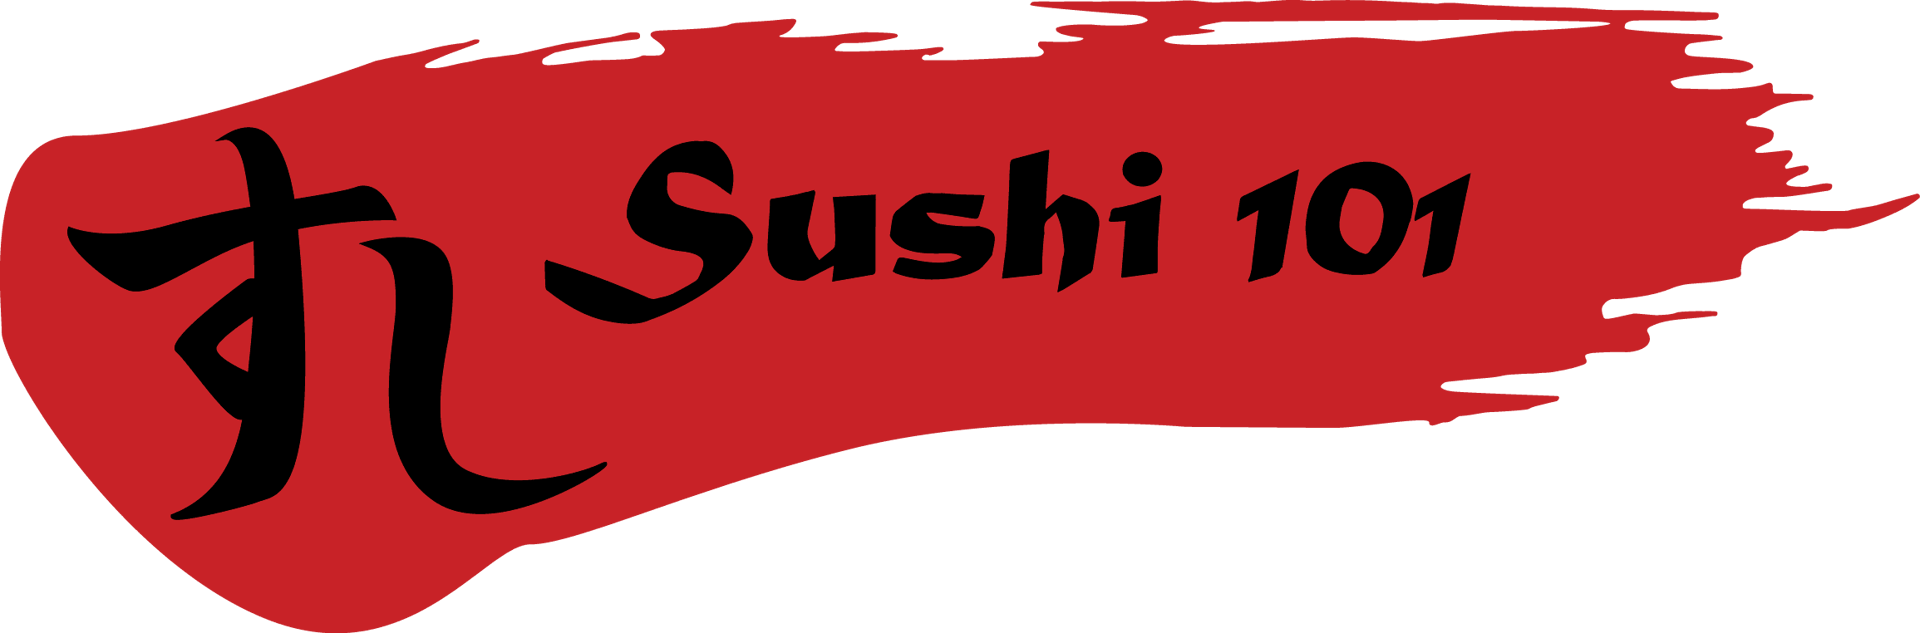 sushi 101 logo